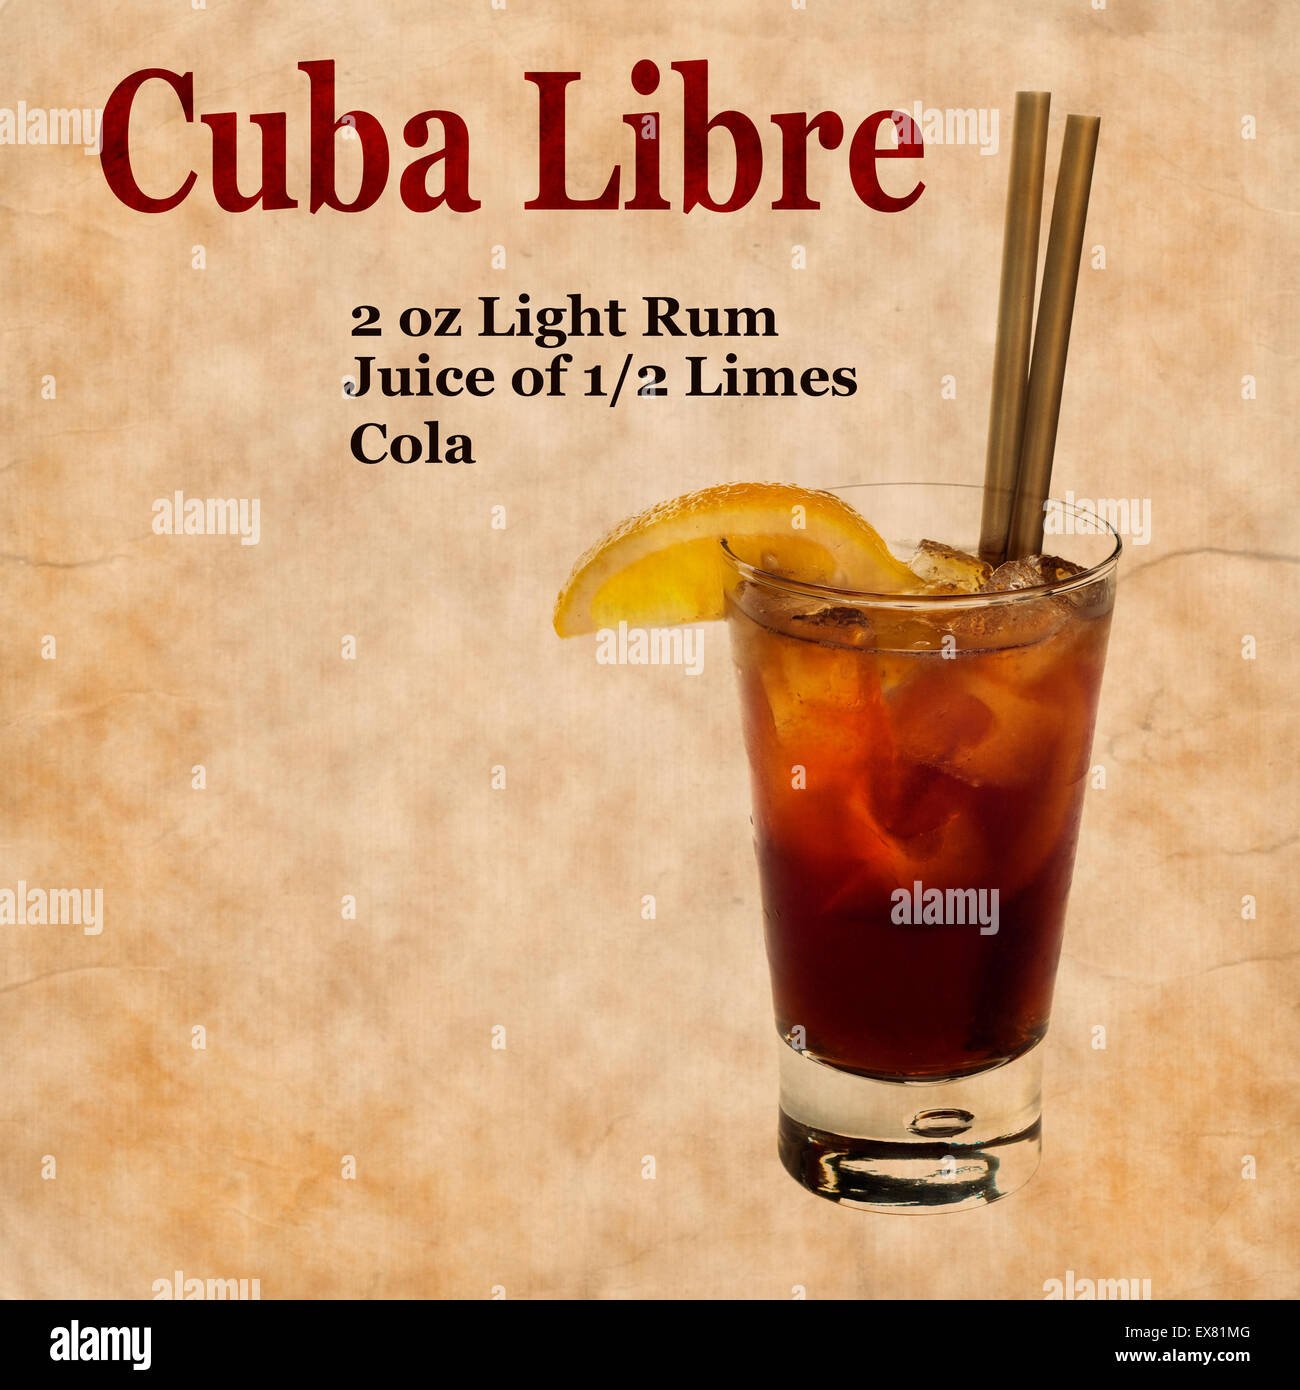 Alte, Vintage oder Grunge Rezept Notebook mit Cuba Libre cocktail auf der Seite. Platz für text Stockfoto